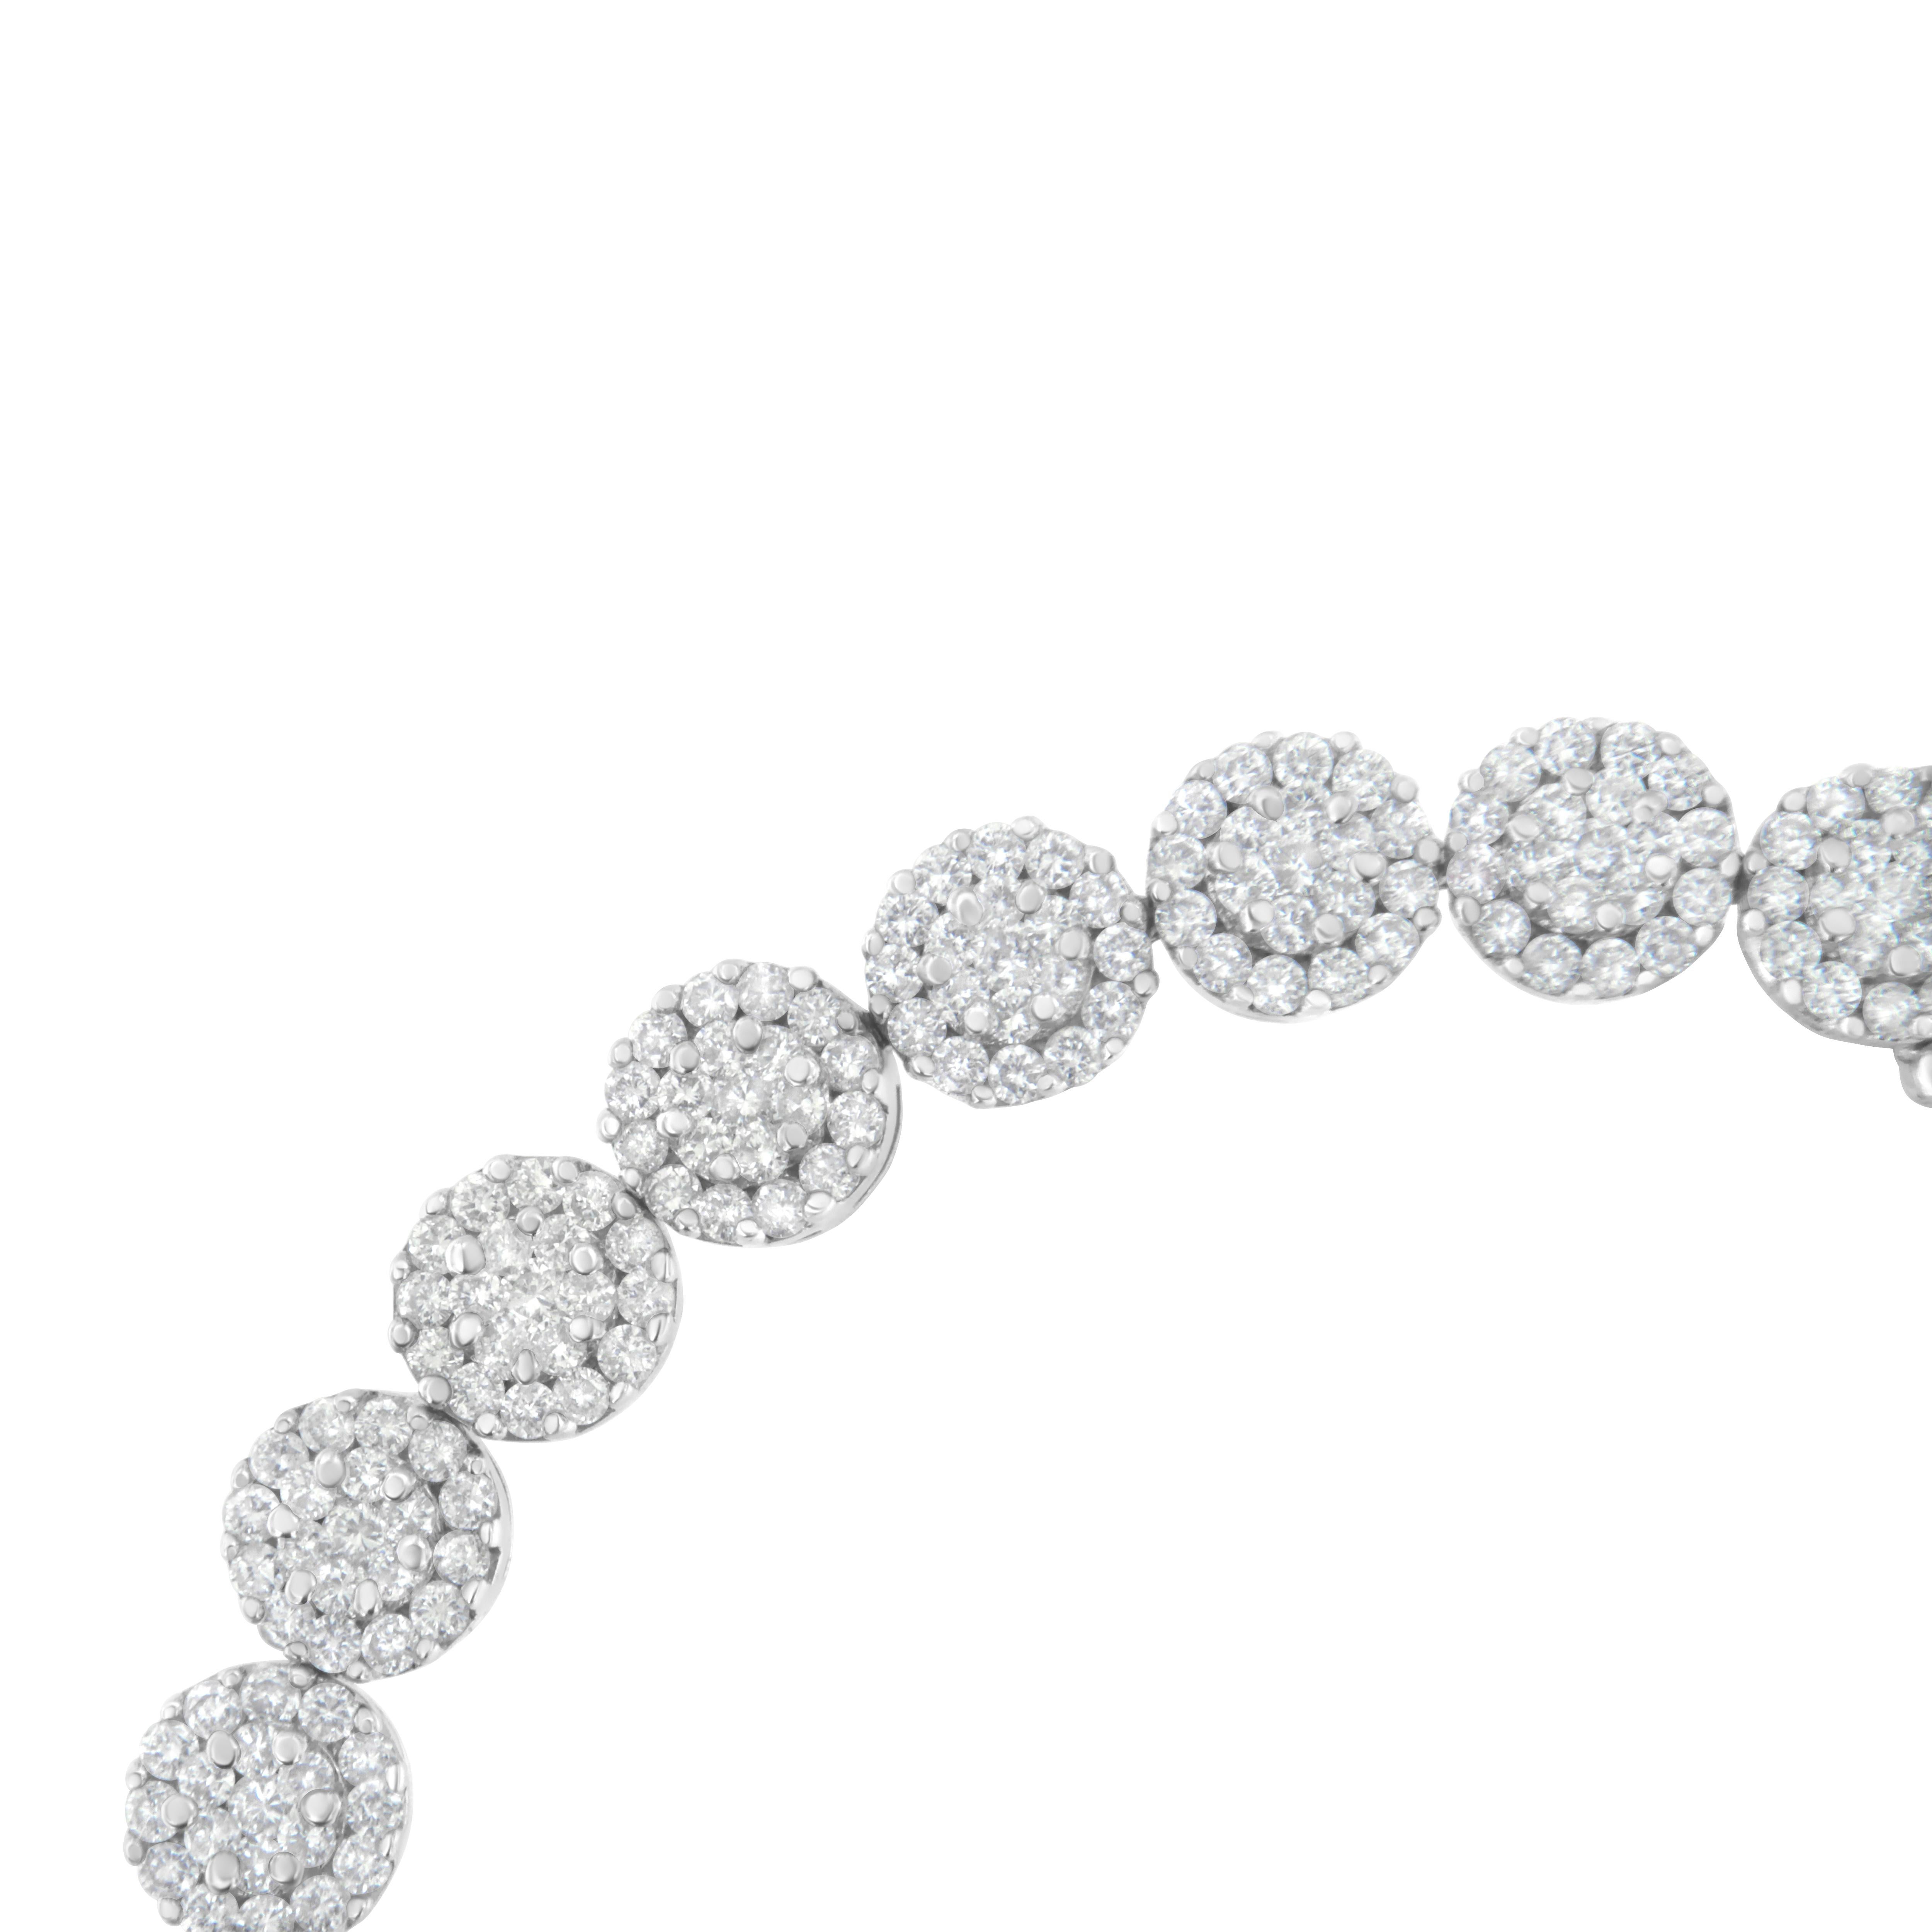 Ce superbe bracelet en or blanc 14k présente 3 7/8 carats de magnifiques diamants naturels. Des diamants ronds sont sertis dans des maillons dorés en forme de fleur. C'est l'accessoire parfait pour toute occasion, formelle ou décontractée. Le